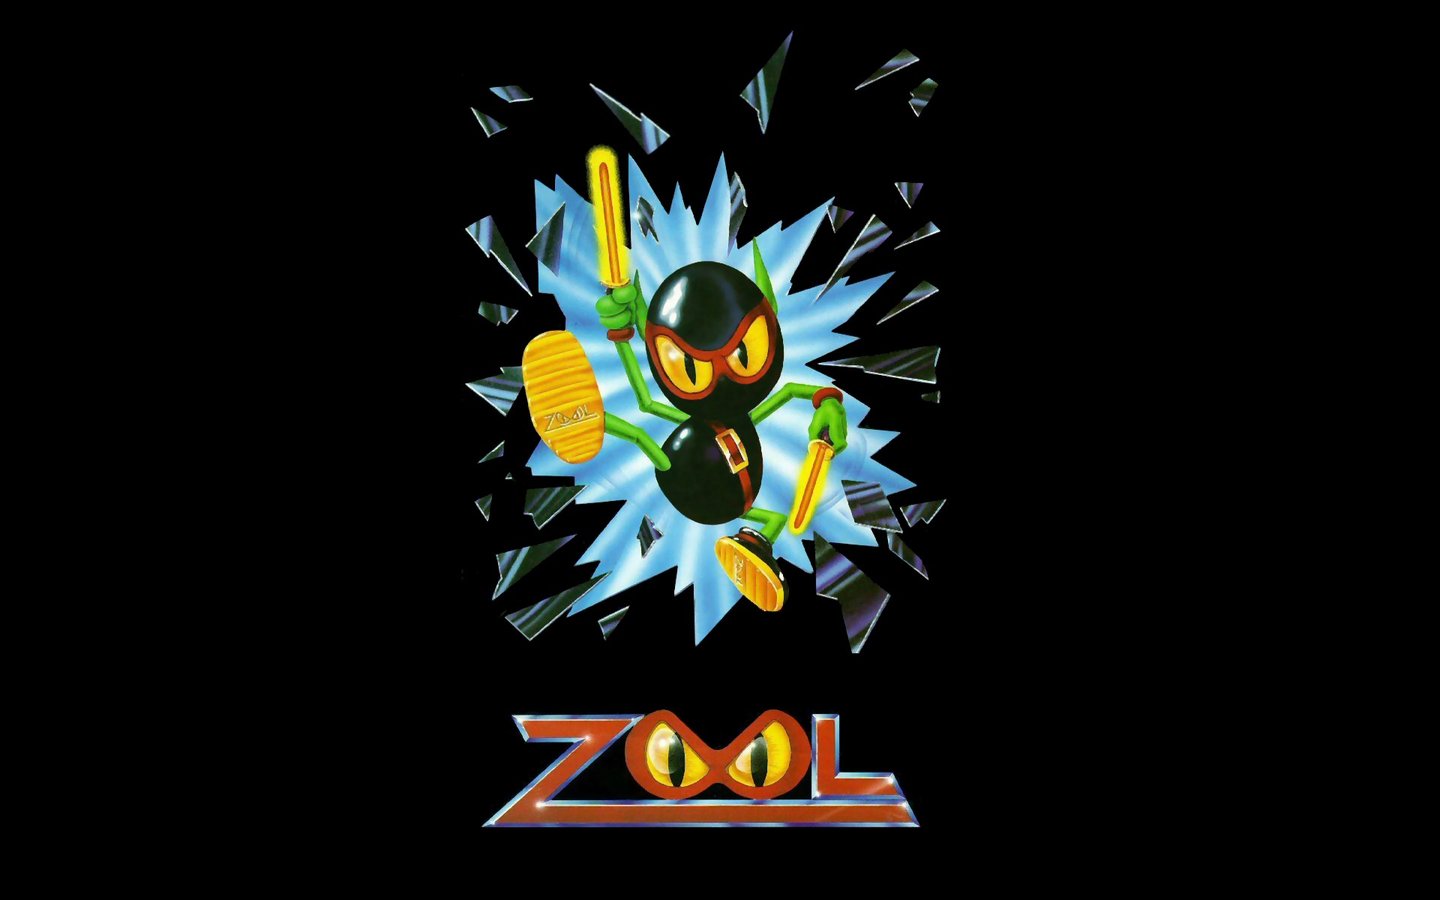 Zool - Amiga Wallpaper